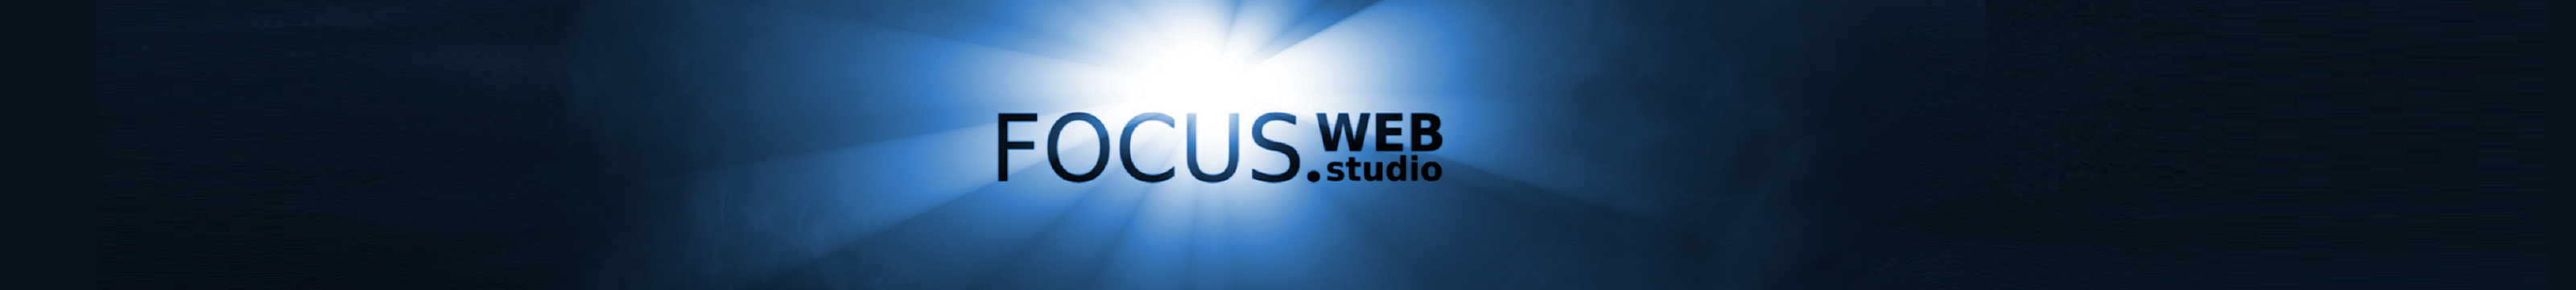 FocusWeb. Studio 님의 프로필 배너